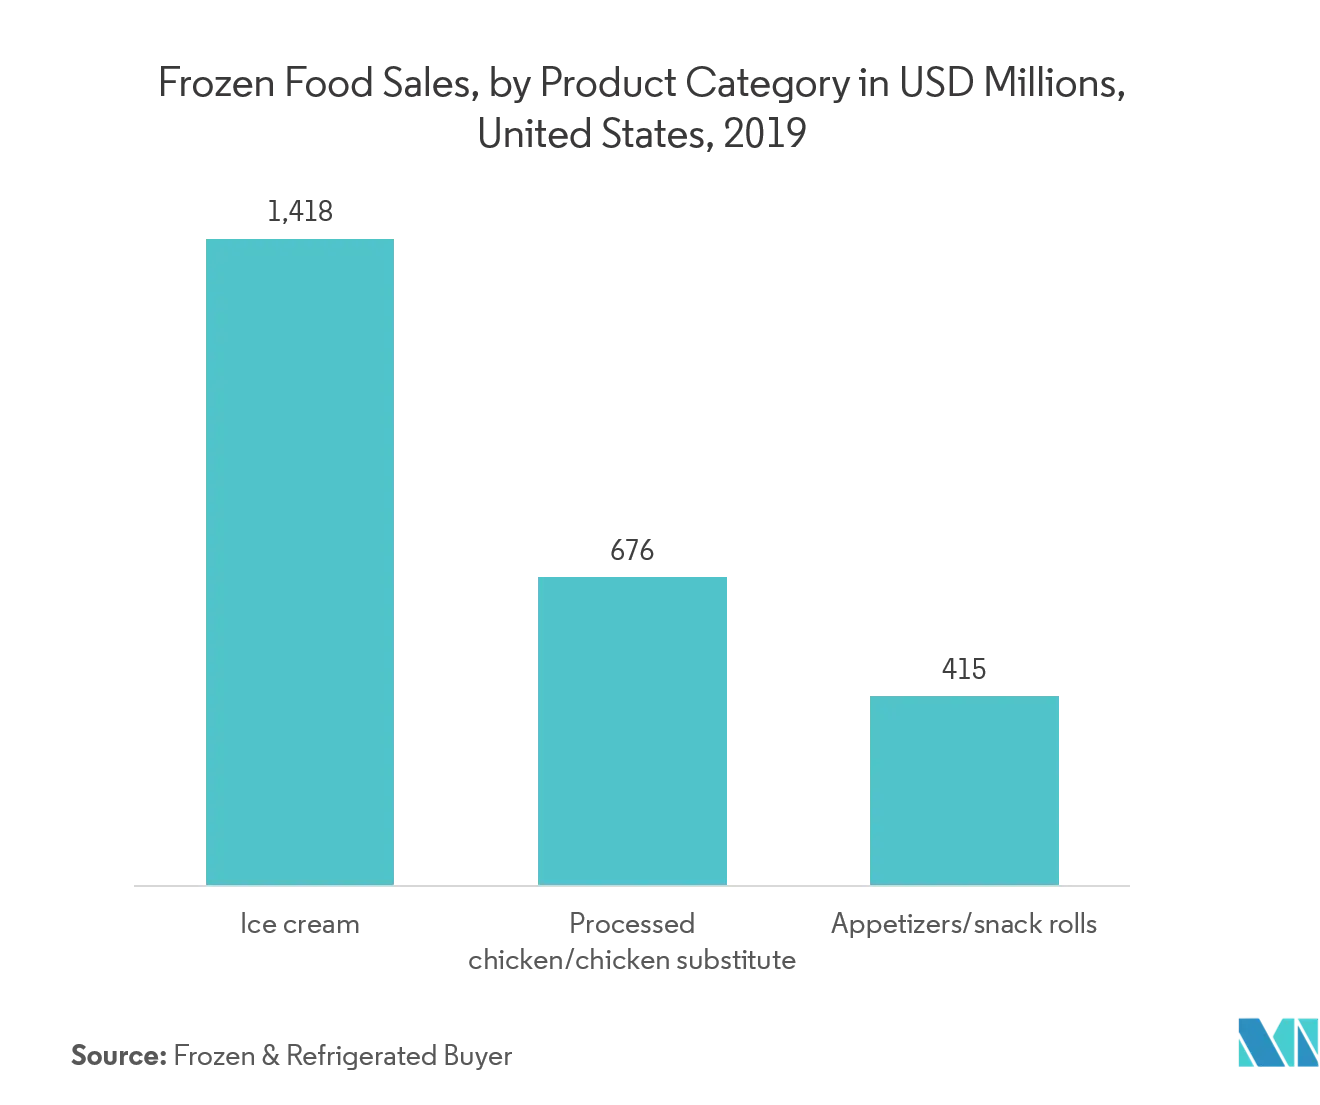 Markt für Thermoformverpackungen  Umsatz mit Tiefkühlkost nach Produktkategorie in Mio. USD, Vereinigte Staaten, 2019